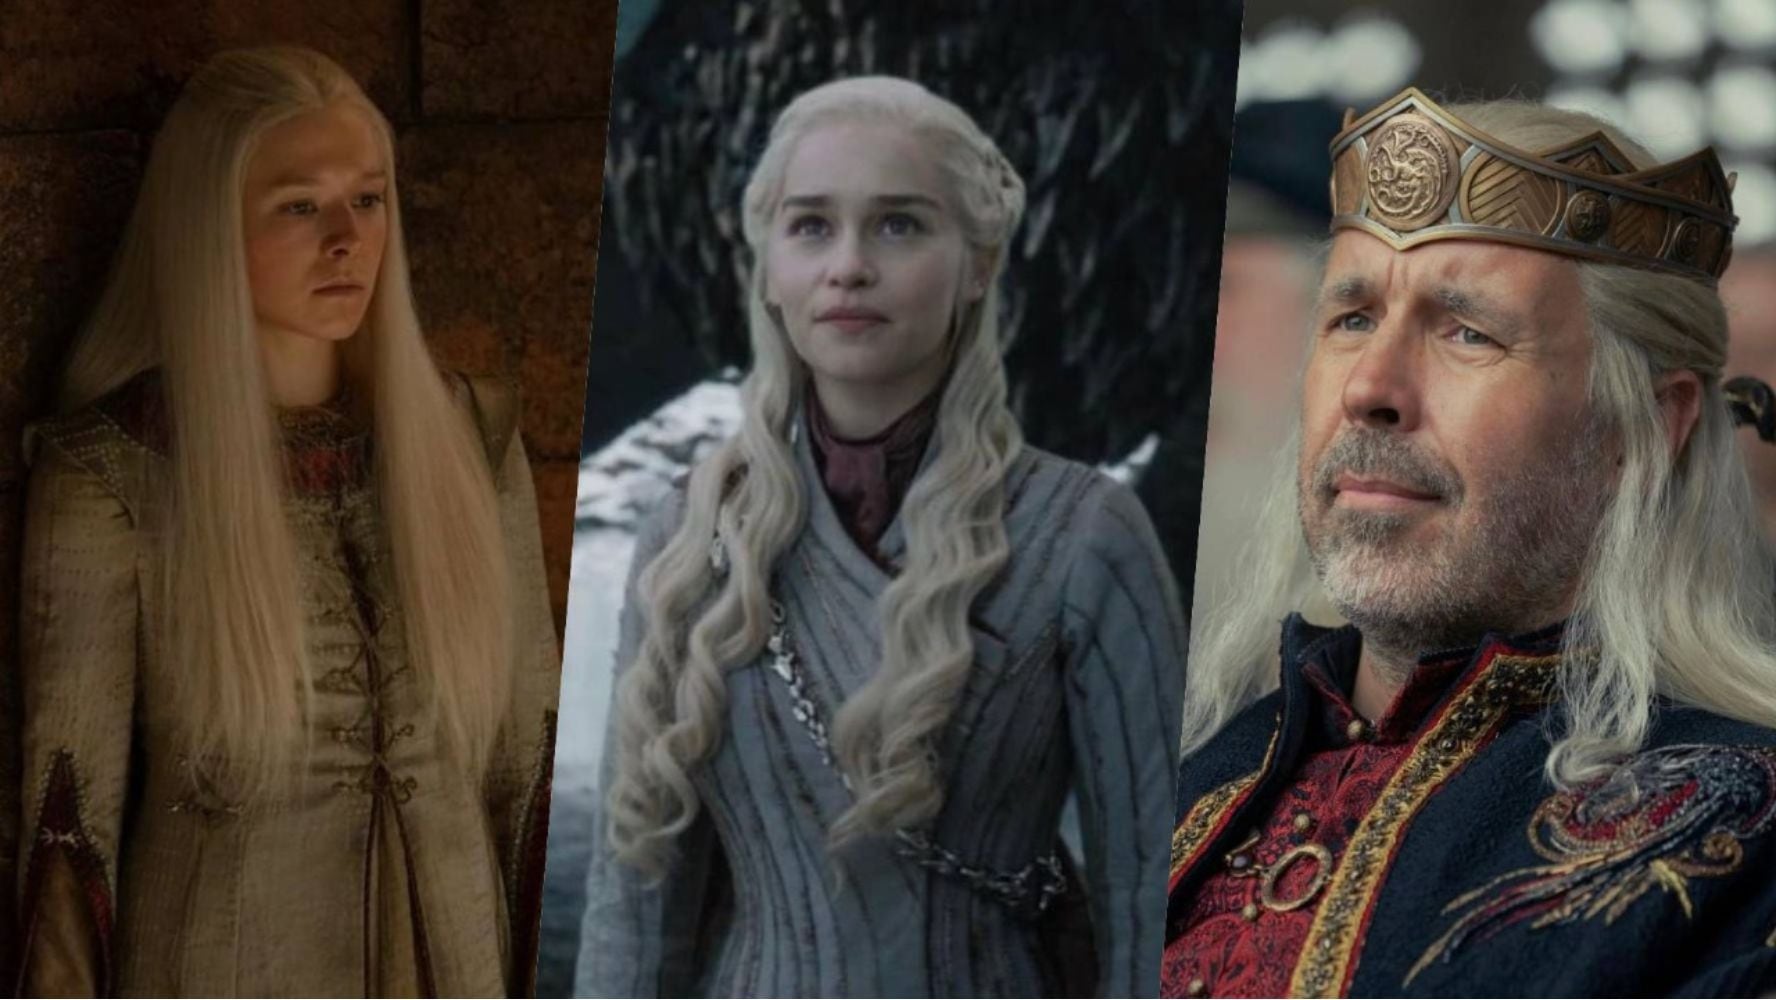 La familia Targaryen es la única capaz de domar dragones en el mundo ficticio de ‘Game of Thrones'. (Foto: Instagram / @houseofthedragonhbo / @gameofthrones)